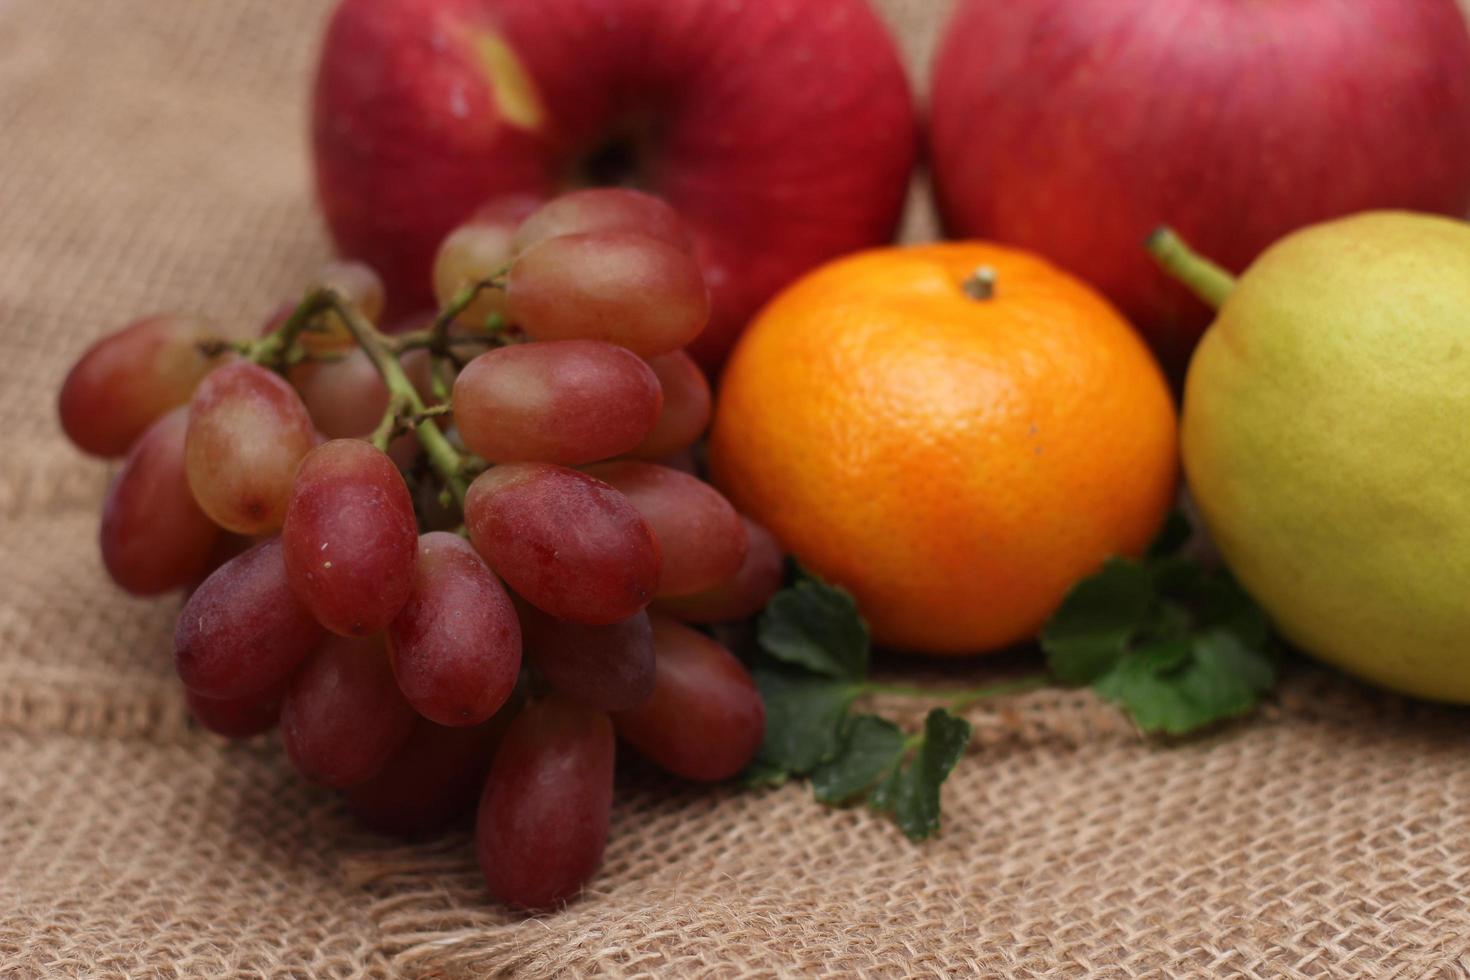 Früchte mit Vitamin C, die für den Körper von Vorteil sind. auf Sackleinen legen - Orange, Traube, Apfel, Guave foto